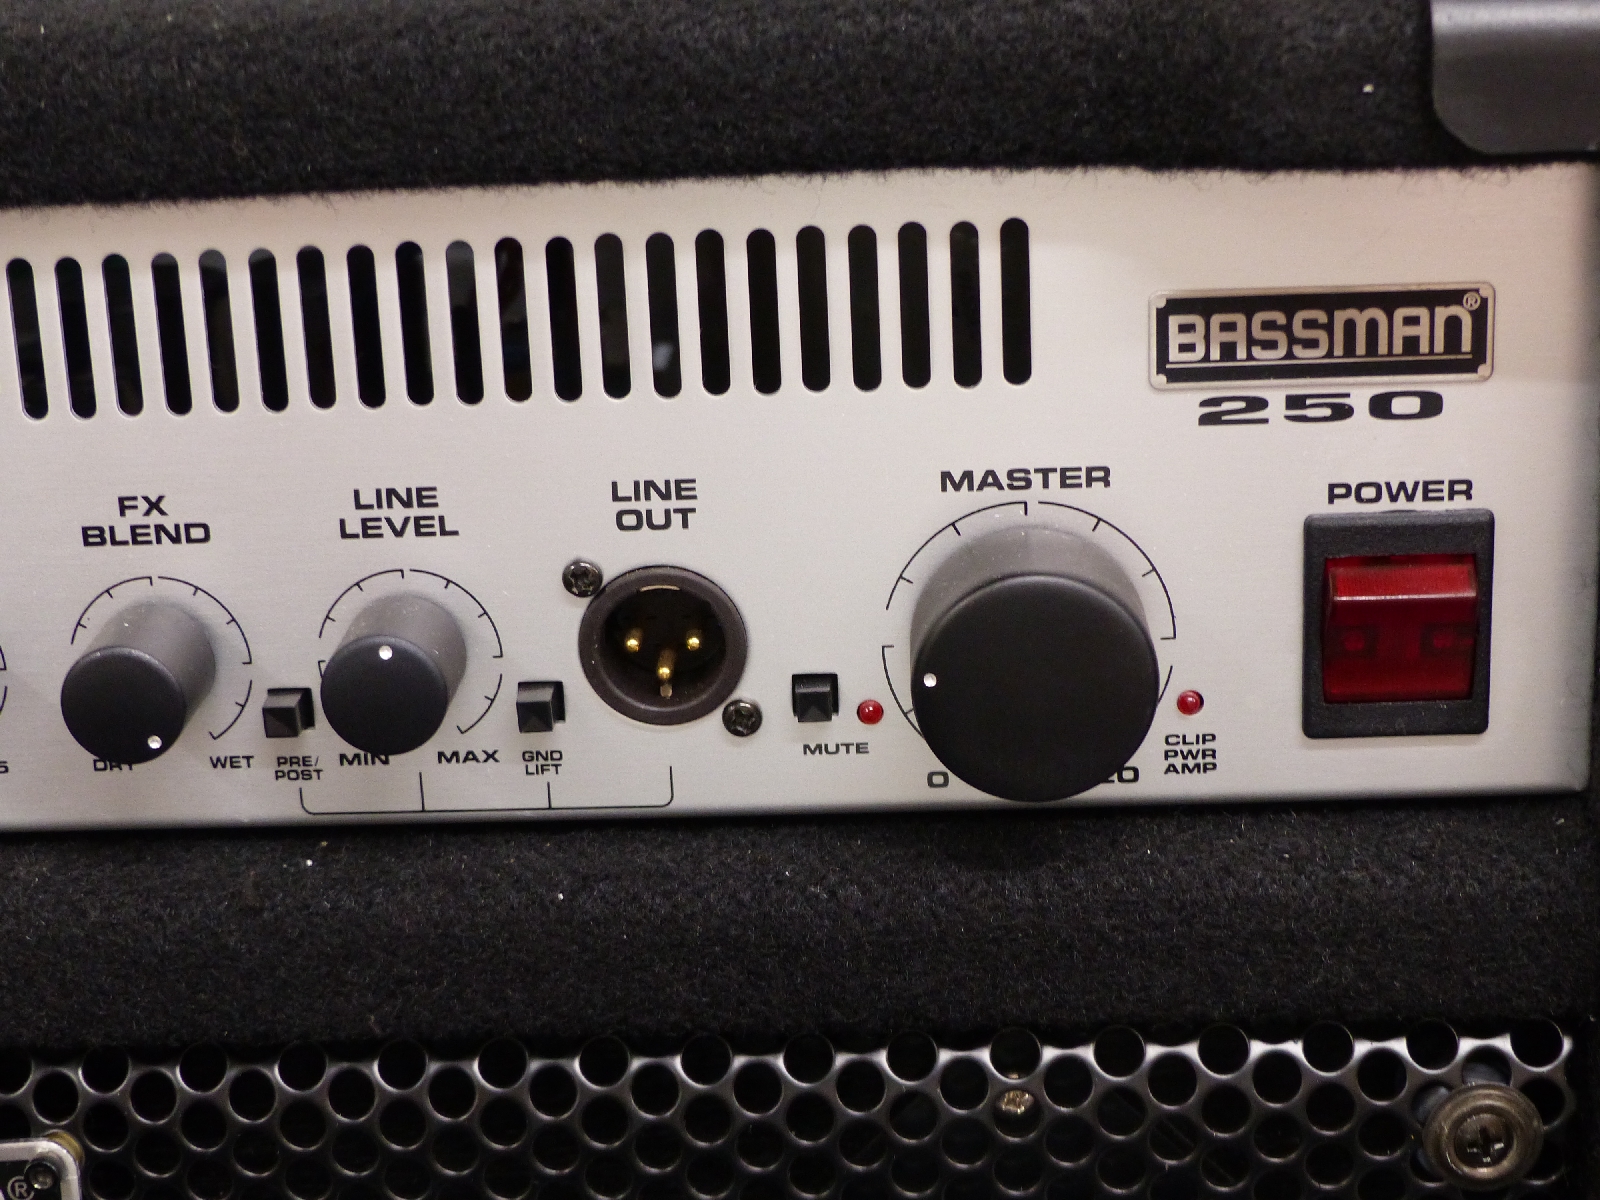 Fender bass amplifier Bassman 250 - Image 2 of 3